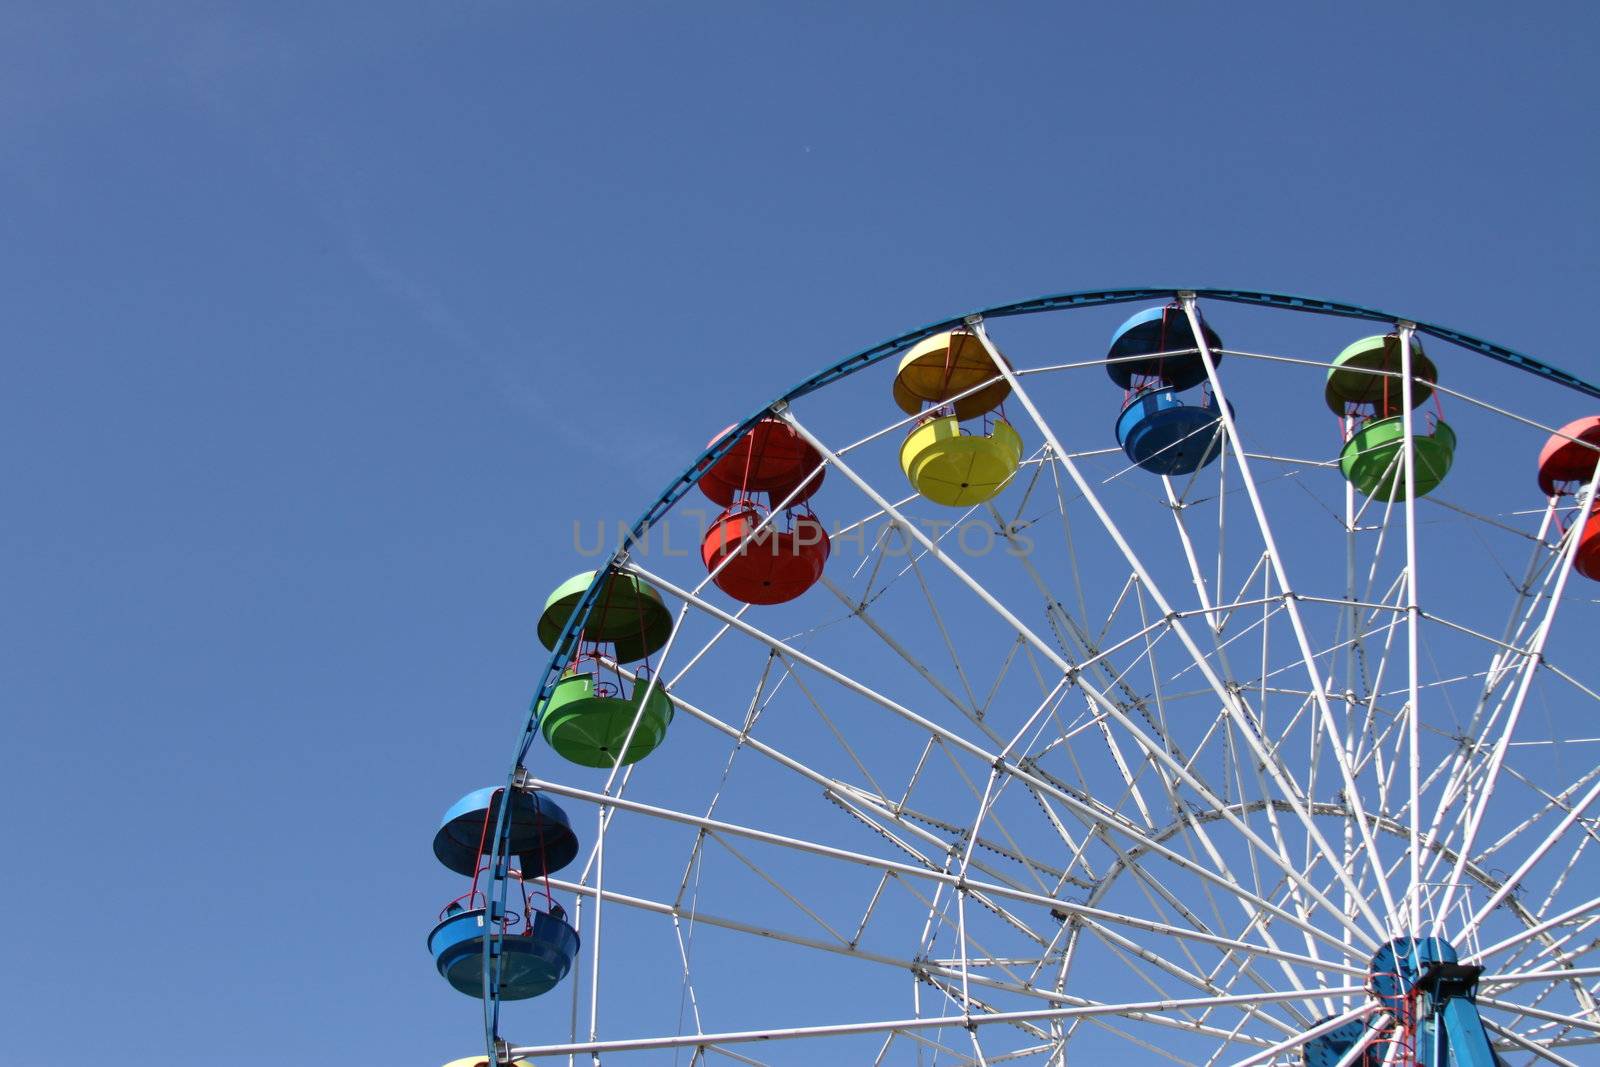 Ferris wheel close up over blue sky.